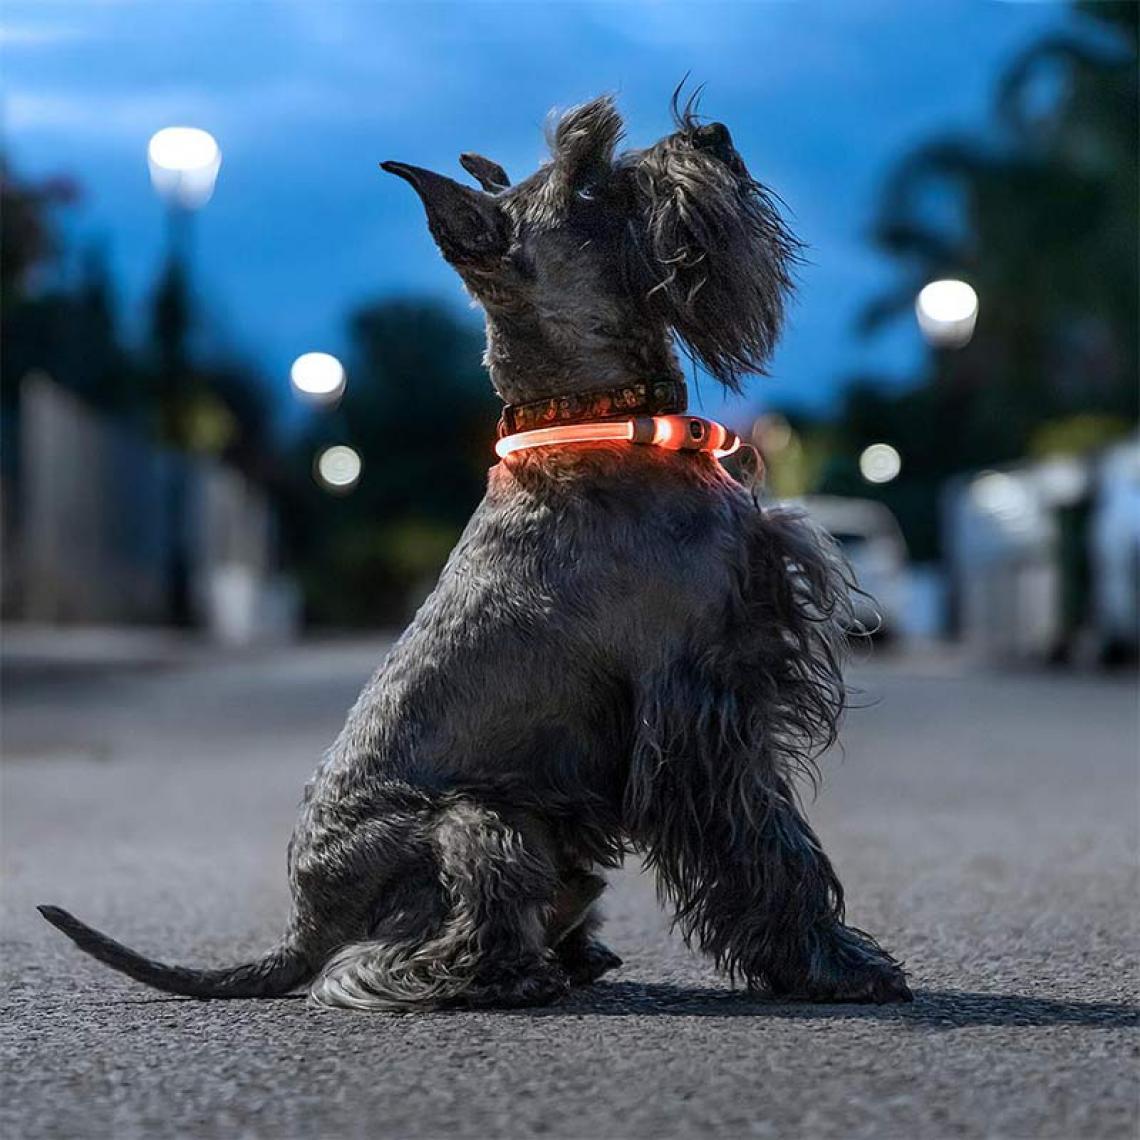 Shop Story - SHOP-STORY - PETLUX : Collier Lumineux LED Orange pour Animaux, Chiens, Chats, Ajustable Réglable et Rechargeable USB - 3 Mode d'Éclairage - Idéal Promenade de Nuit - Meilleur Visibilité - Collier pour chien